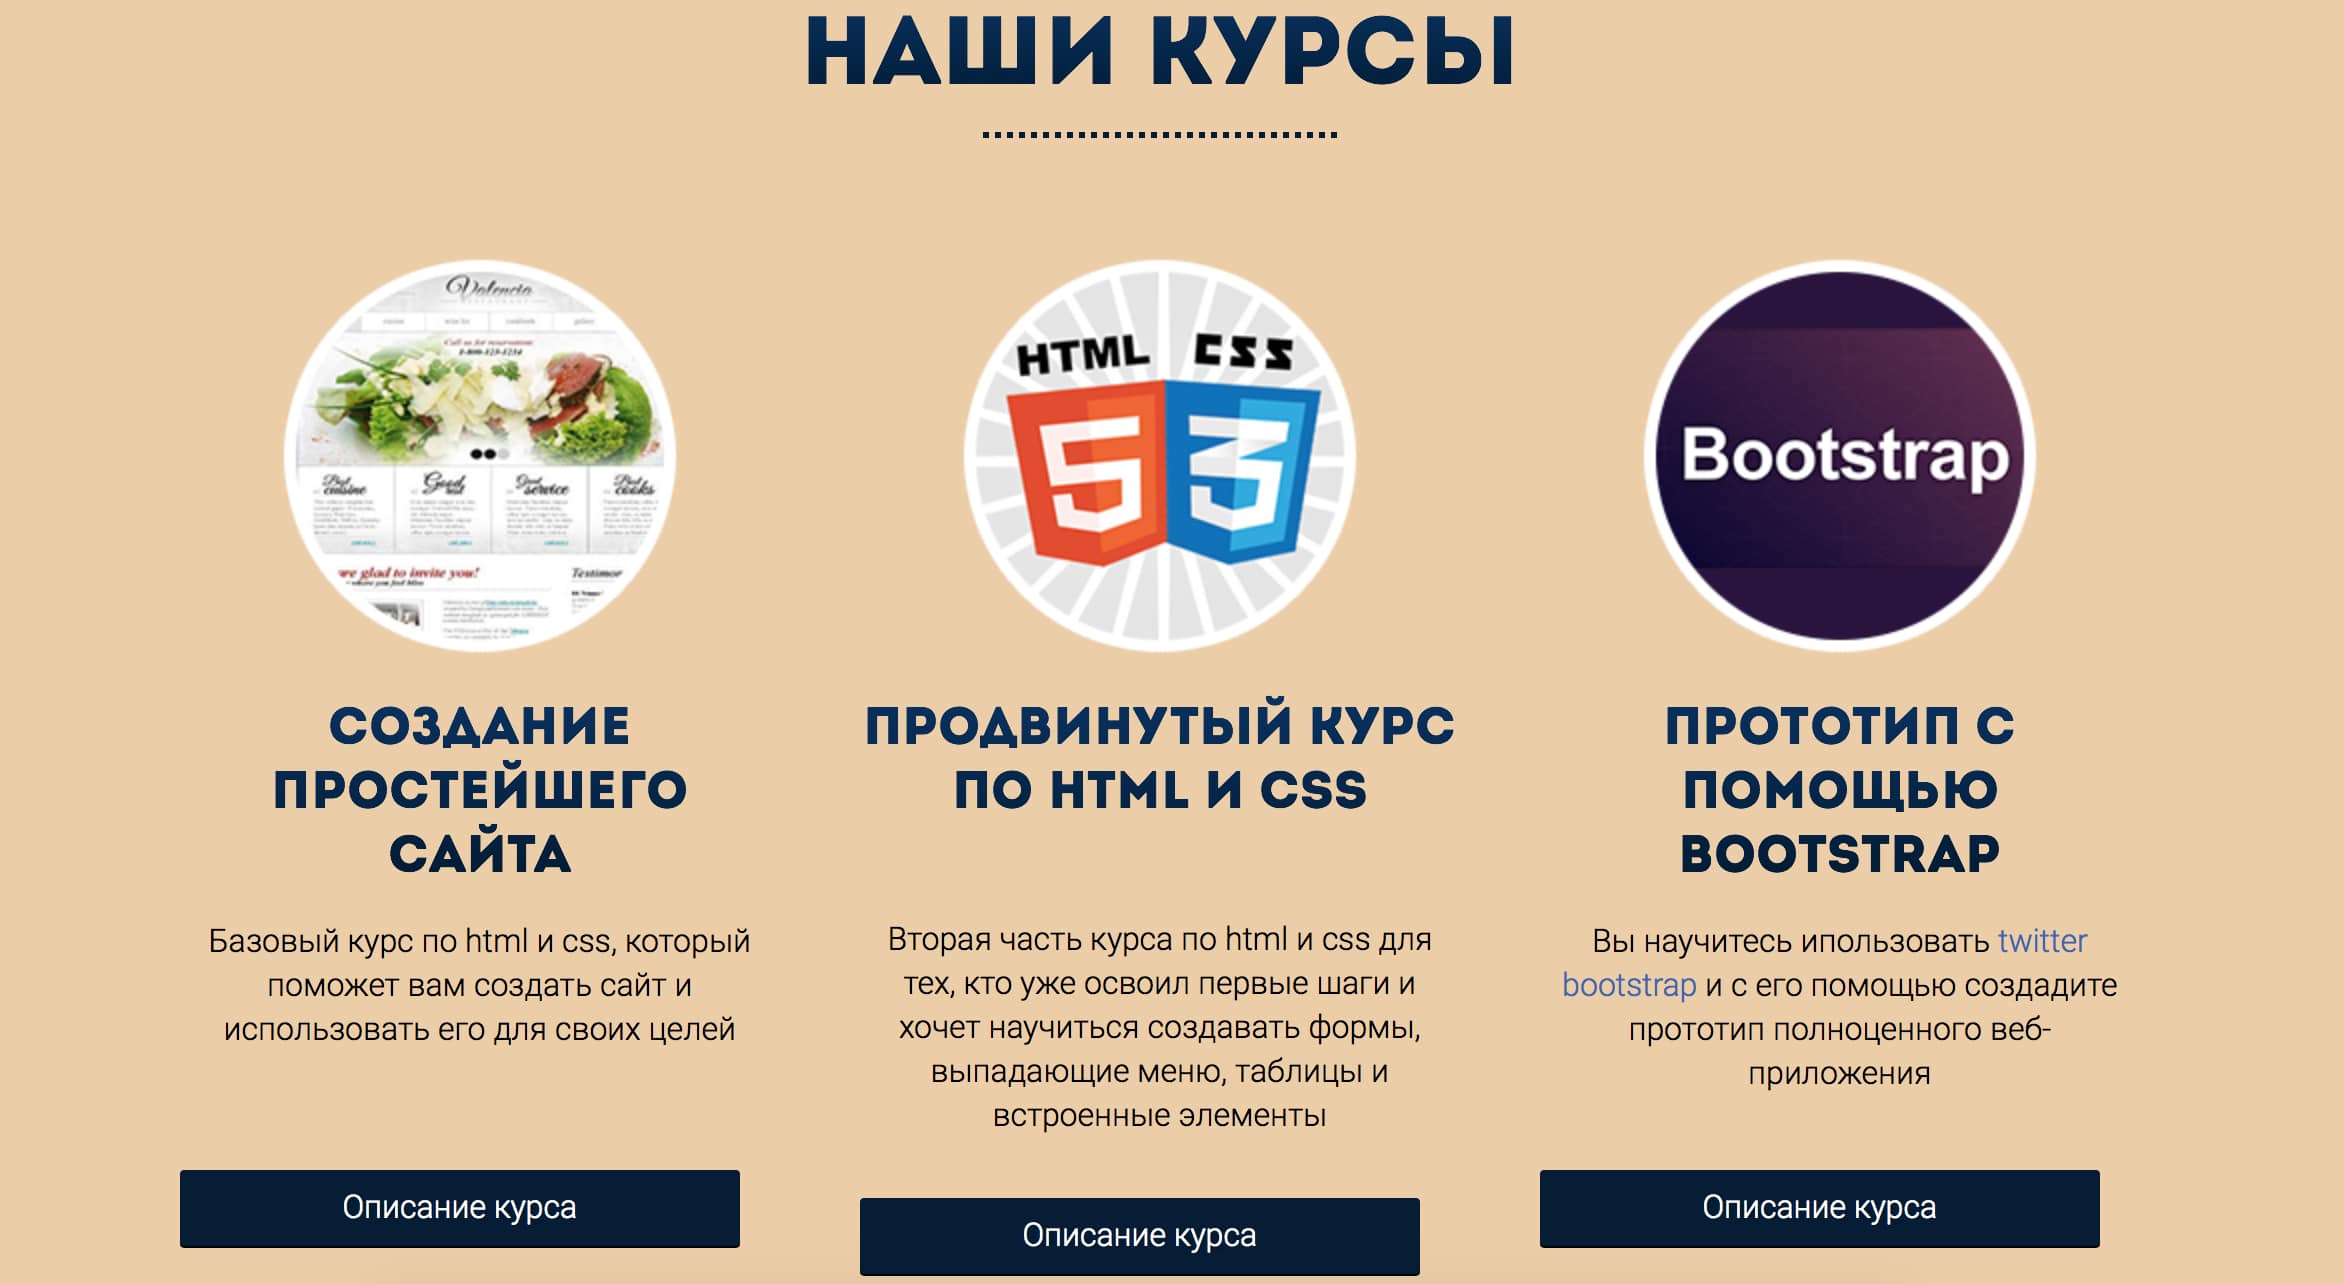 CleverBear.ru, скриншот интерфейса 2